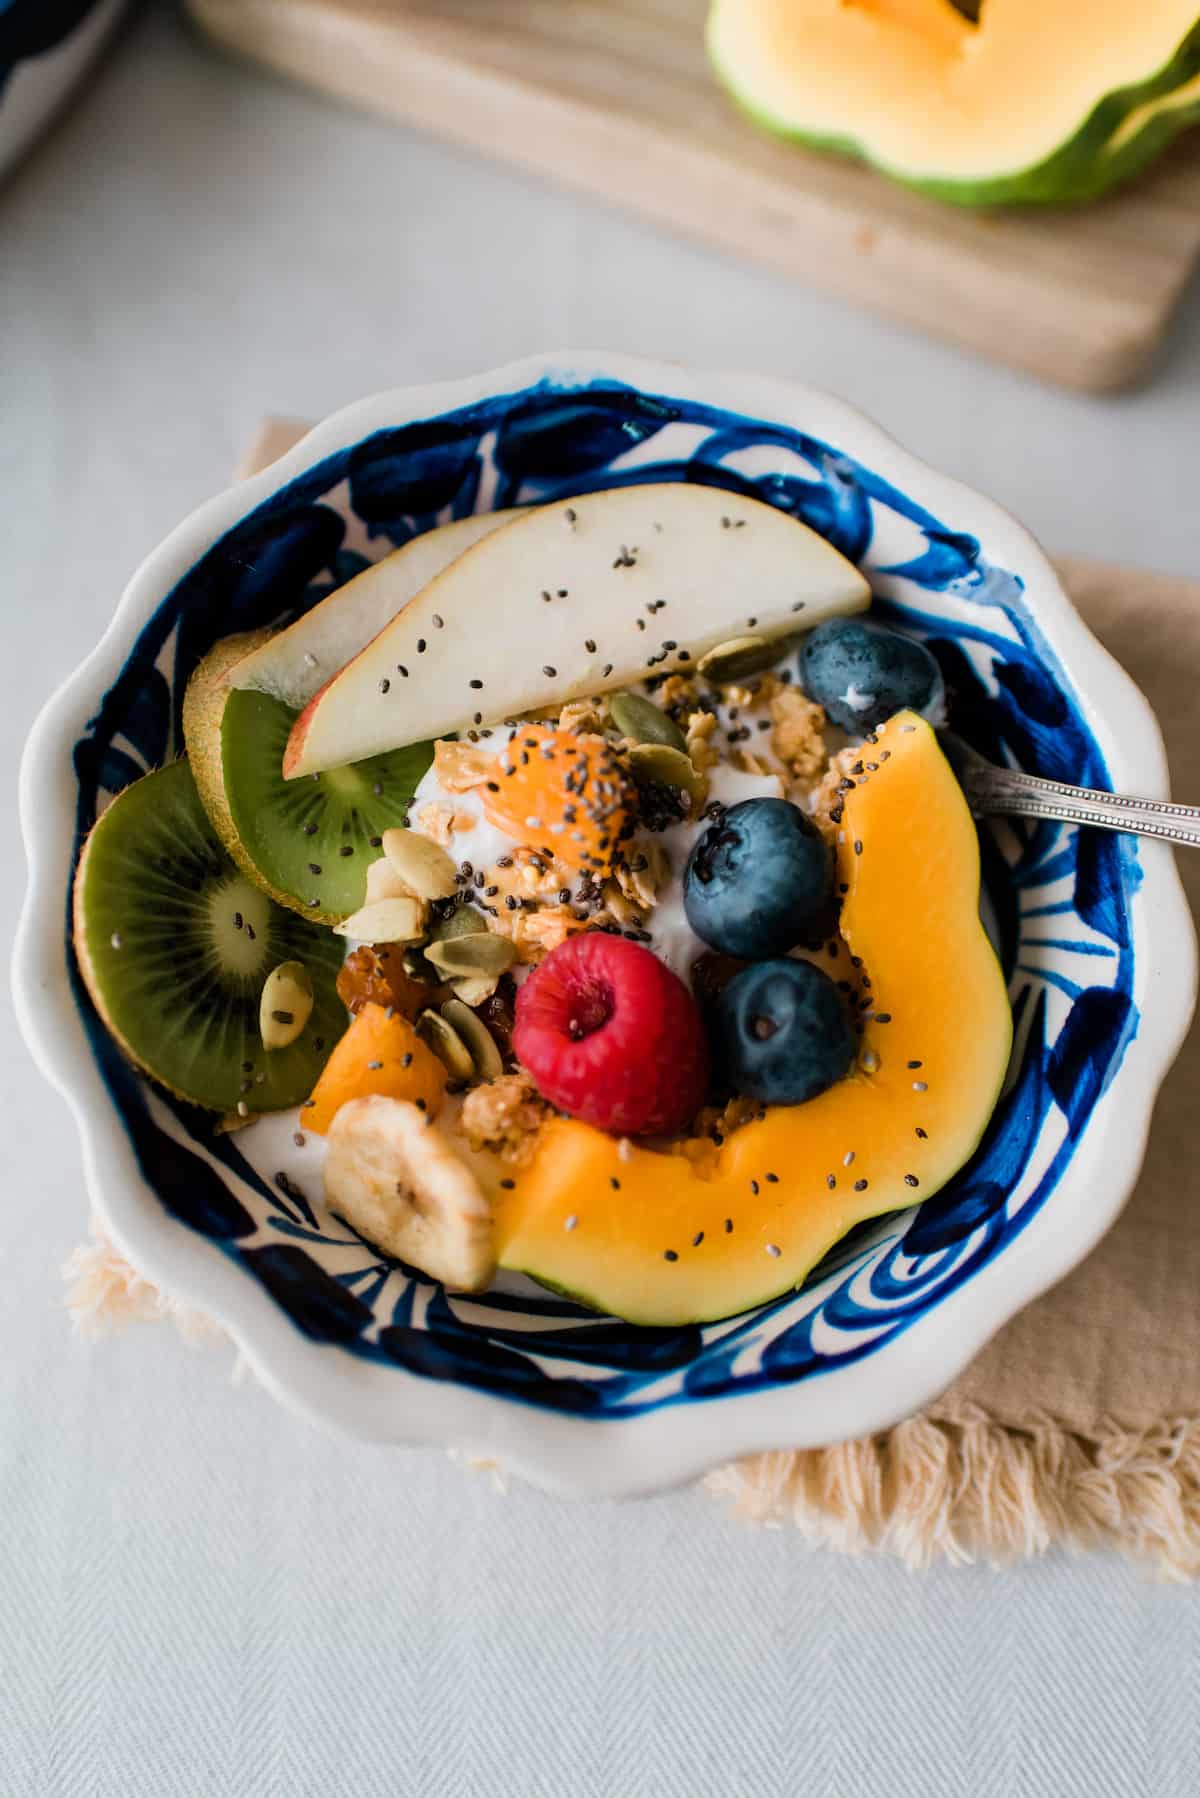 Fotografía cenital de un parfait de yogur casero cubierto con melón, bayas, kiwi, granola, pepitas y semillas de chía.